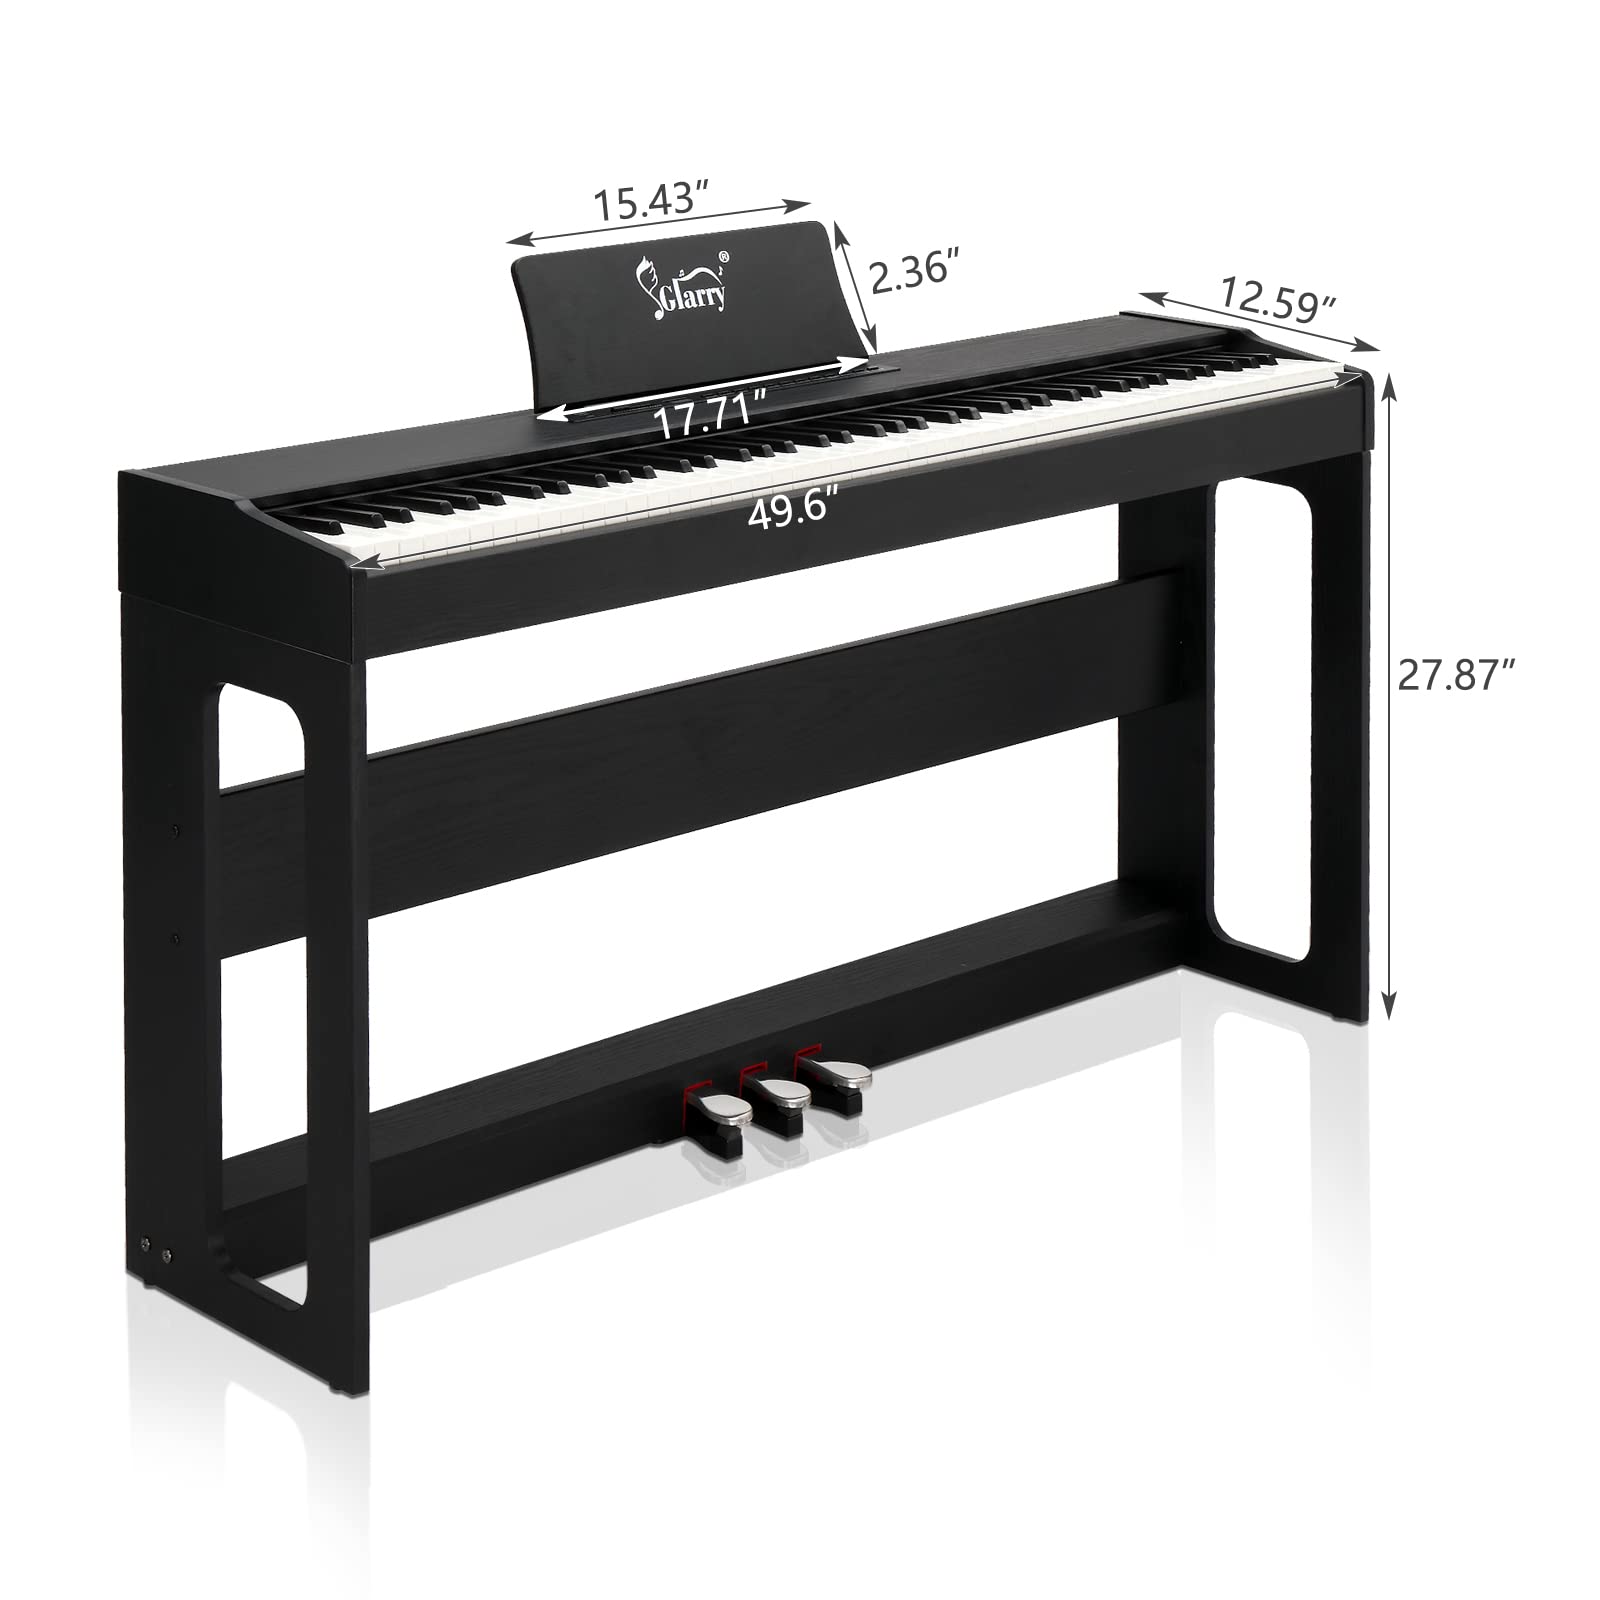 LEADZM 88 Tasten Digital Piano, Voll Gewichtete Tastatur, E-Piano mit MIDI-USB, Audio Bluetooth und Stereolautsprechern, 128 Töne und Rhythmen, 3-Pedal-System, Schwarz